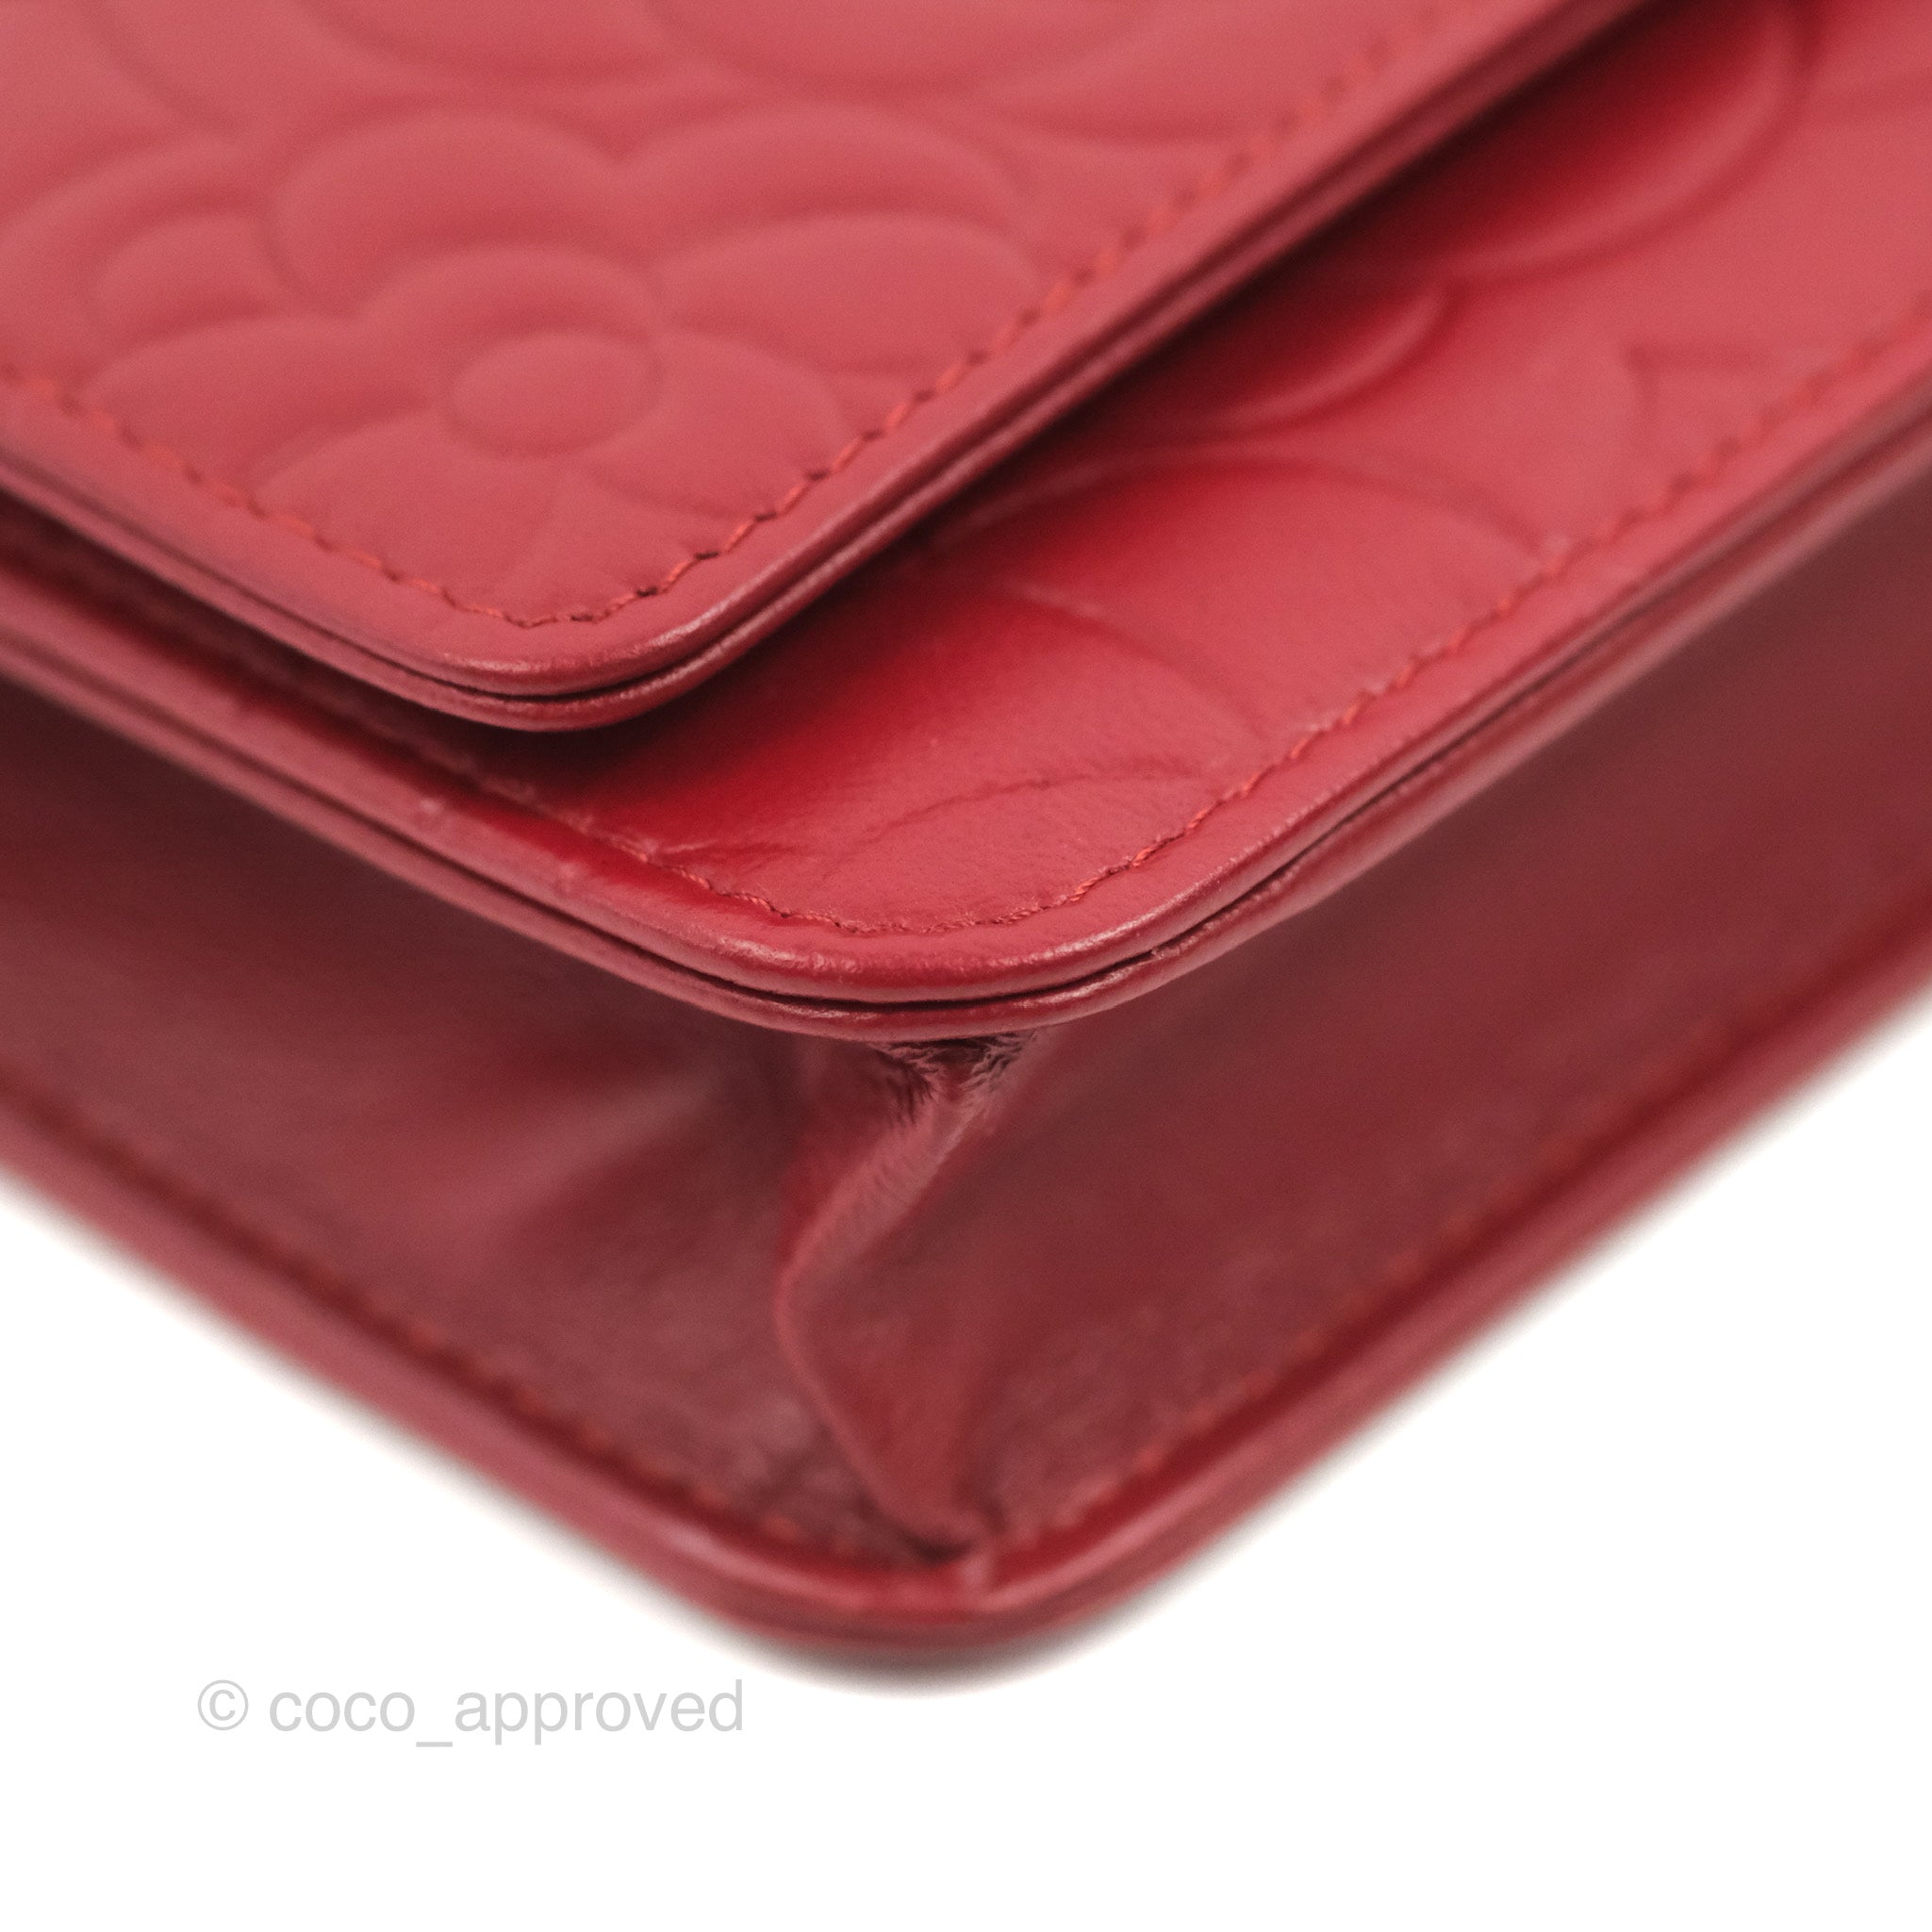 Chanel long wallet camellia - Gem